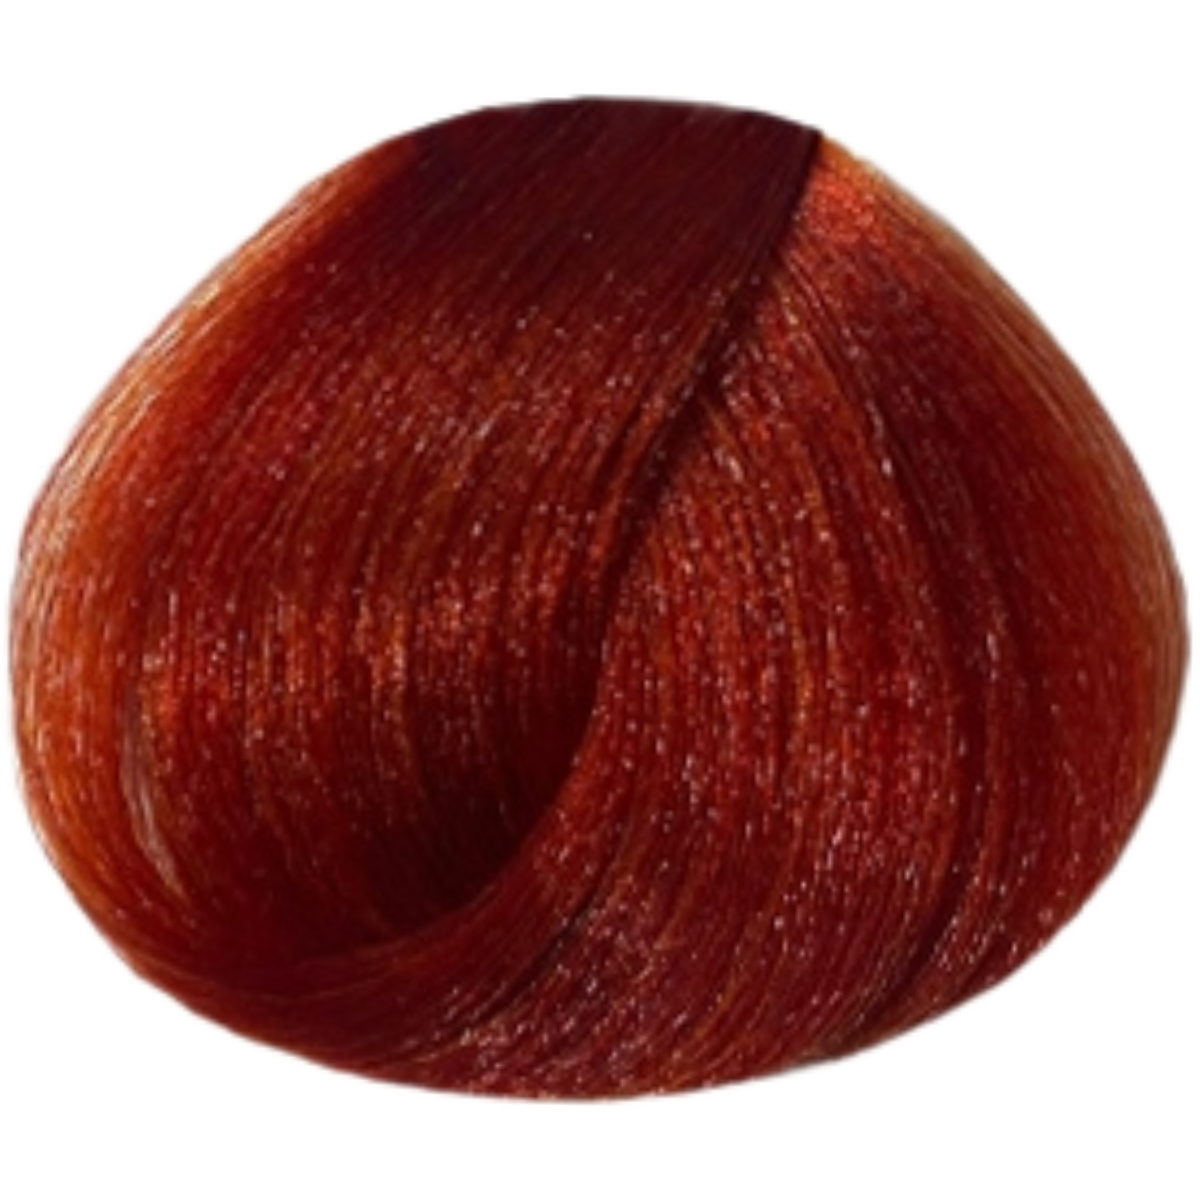 צבע שיער 7.46 COPPER RED BLONDE פארמויטה FarmaVita צבע לשיער 100 גרם